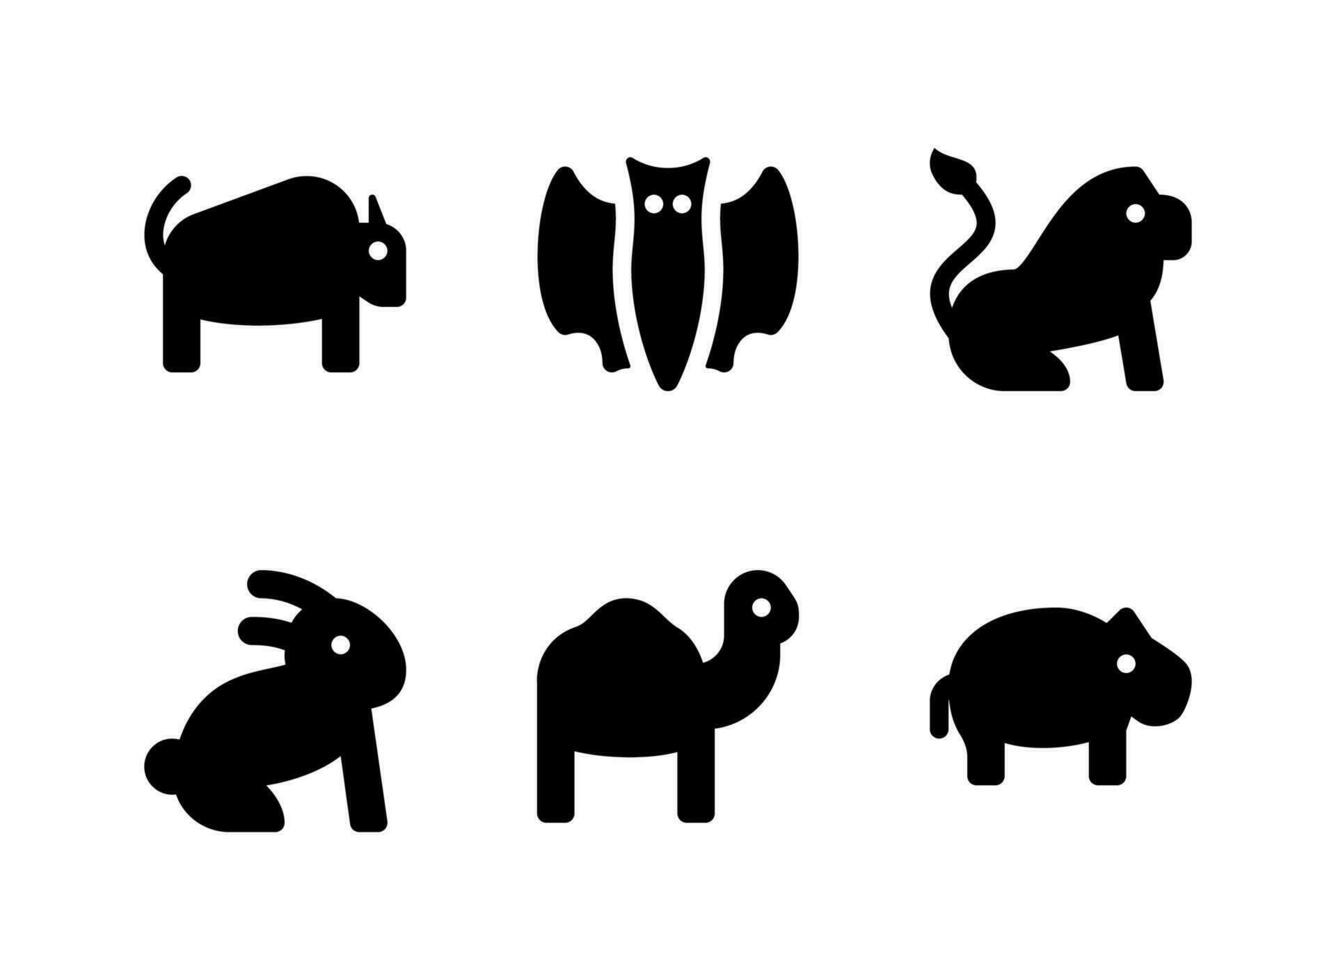 semplice set di icone solide vettoriali relative agli animali. contiene icone come cammello, ippopotamo, coniglio, leone e altro ancora.